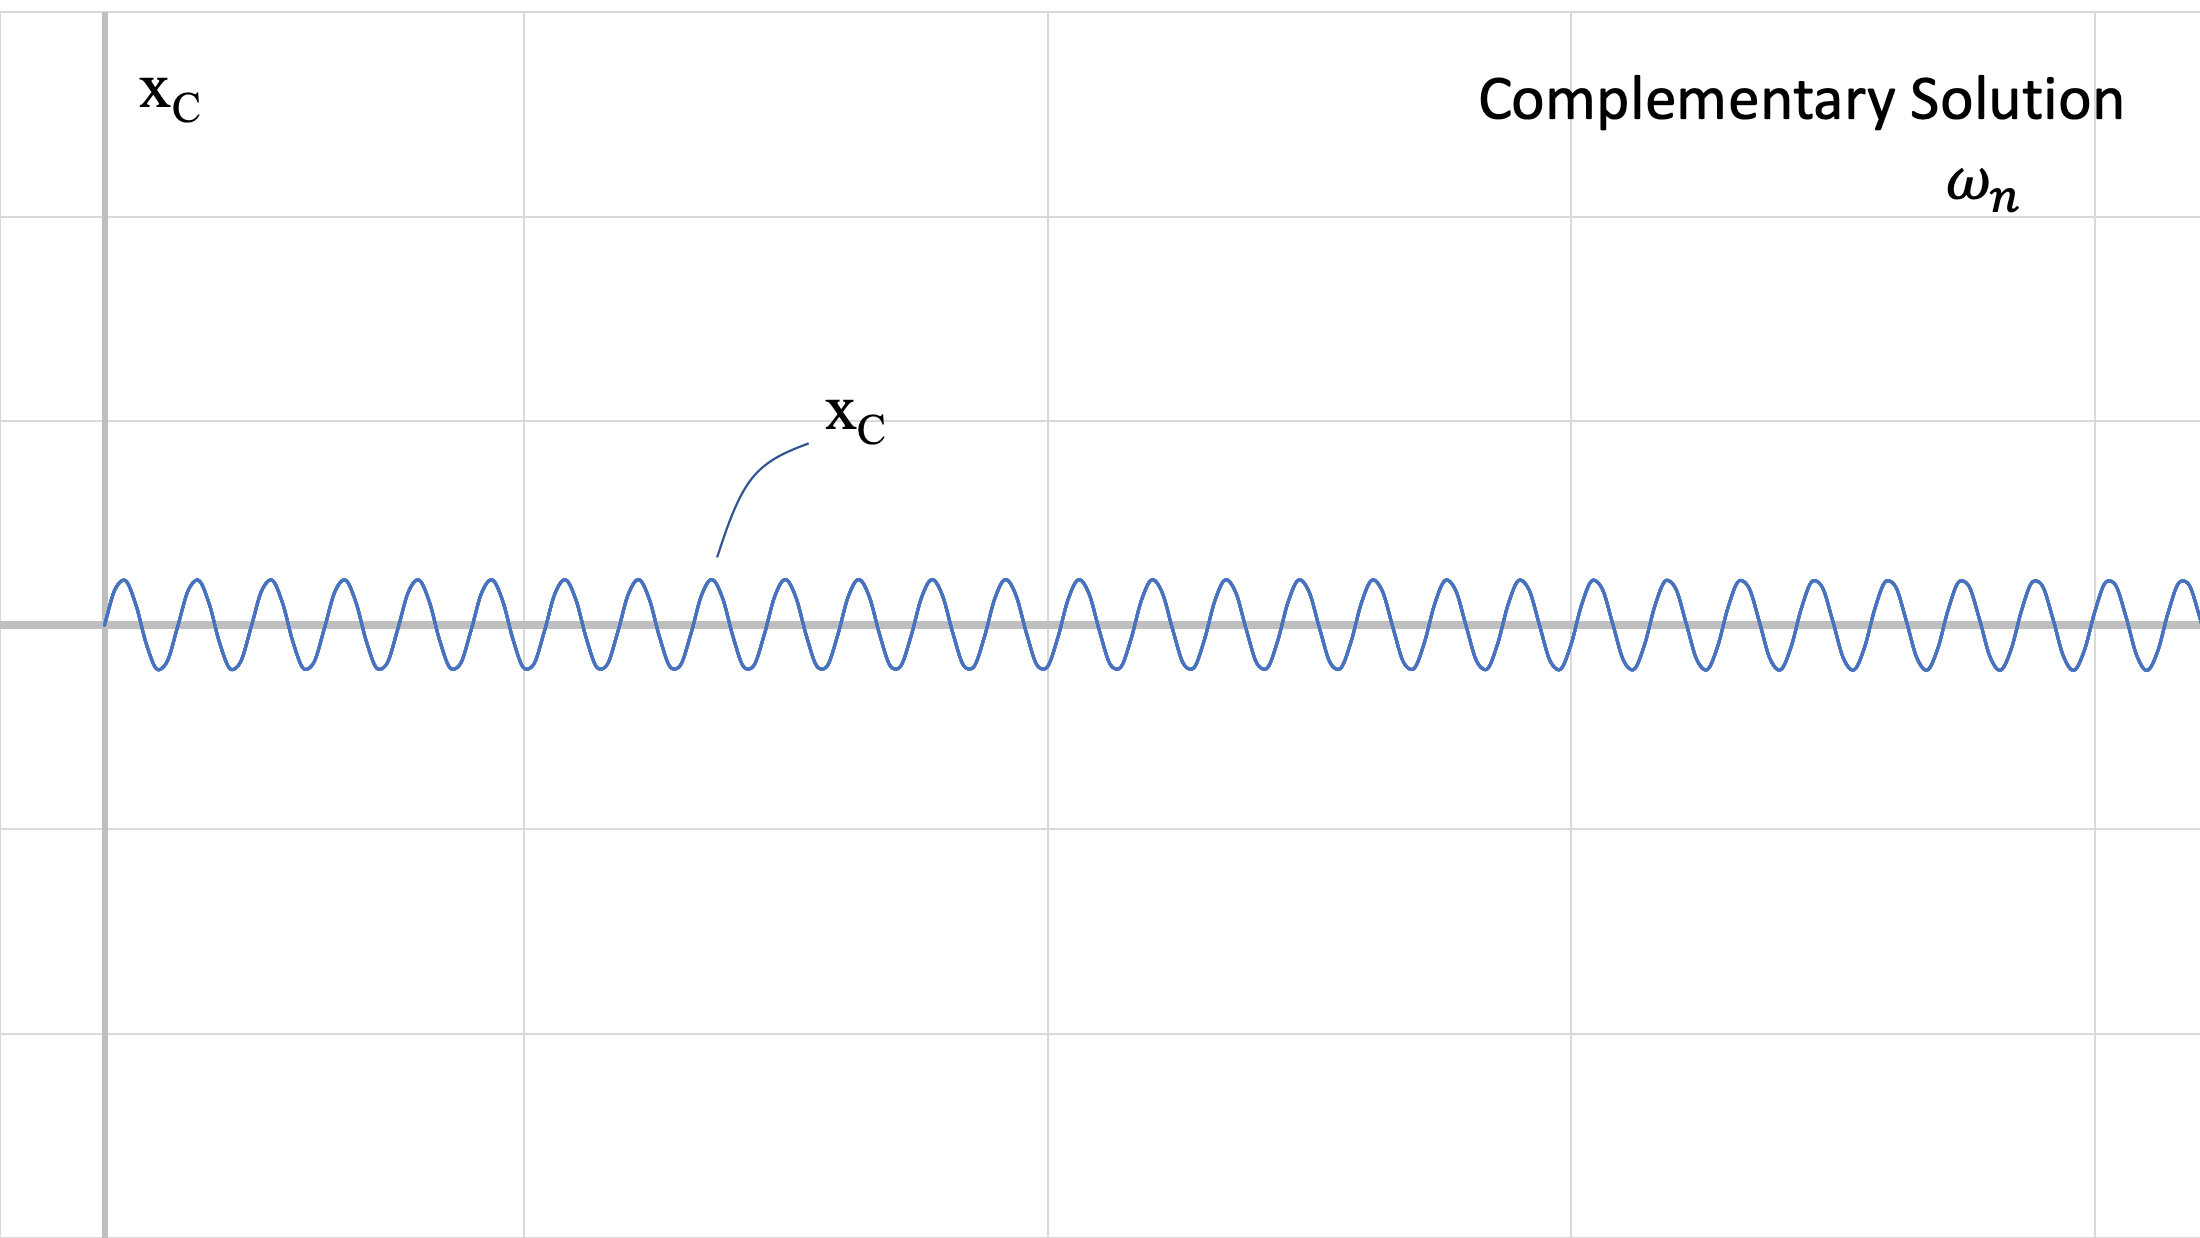 Gráfica de la solución complementaria a la ecuación de movimiento del sistema, x_C, que toma la forma de una gráfica que oscila regularmente alrededor del eje t horizontal, siendo la amplitud y el periodo muy pequeños.